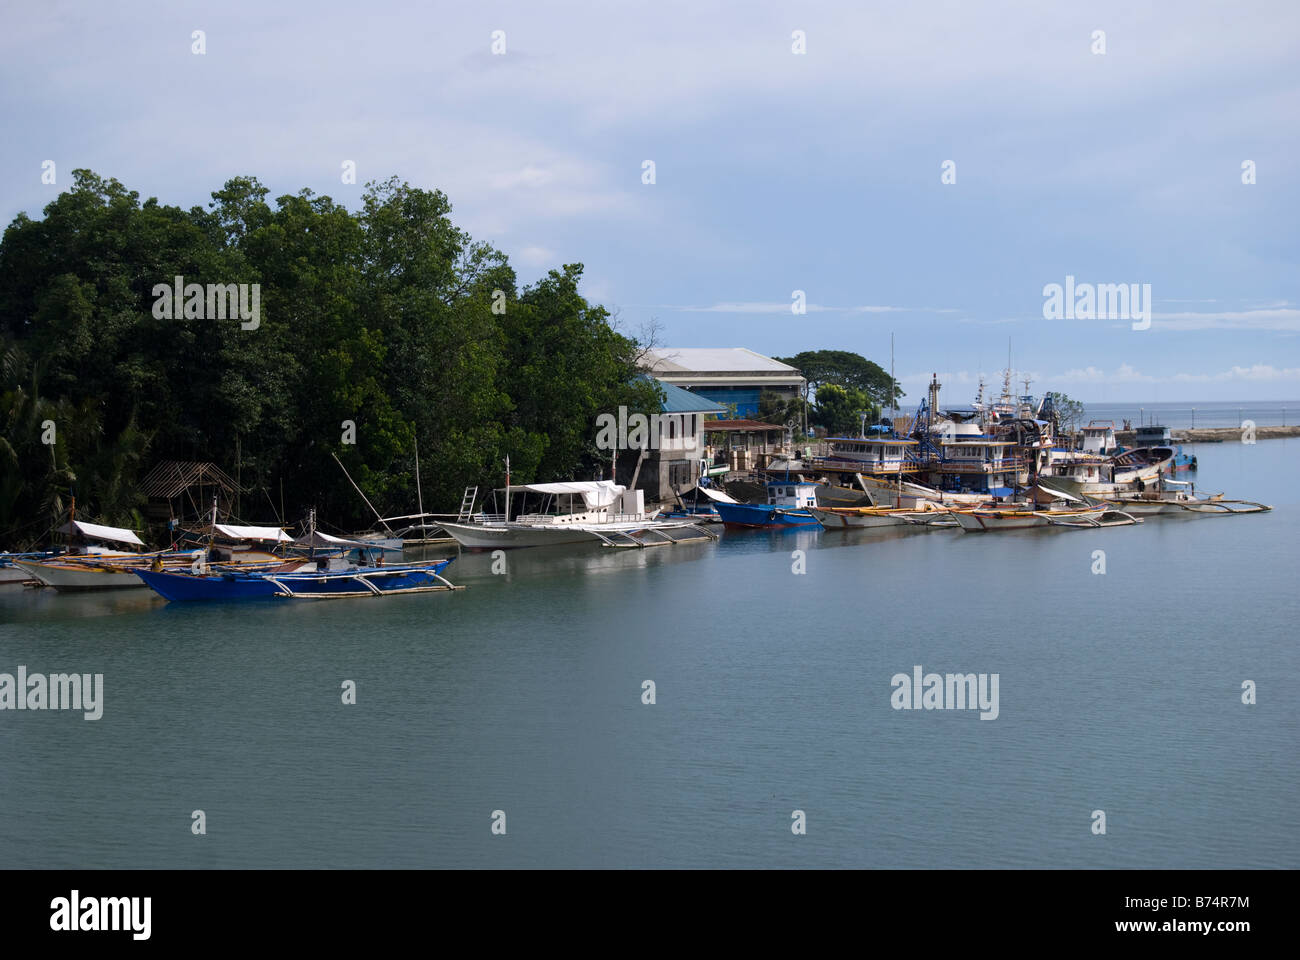 Piccolo porto con le barche dei pescatori, Loboc River estuary, Loboc, Bohol, Visayas, Filippine Foto Stock